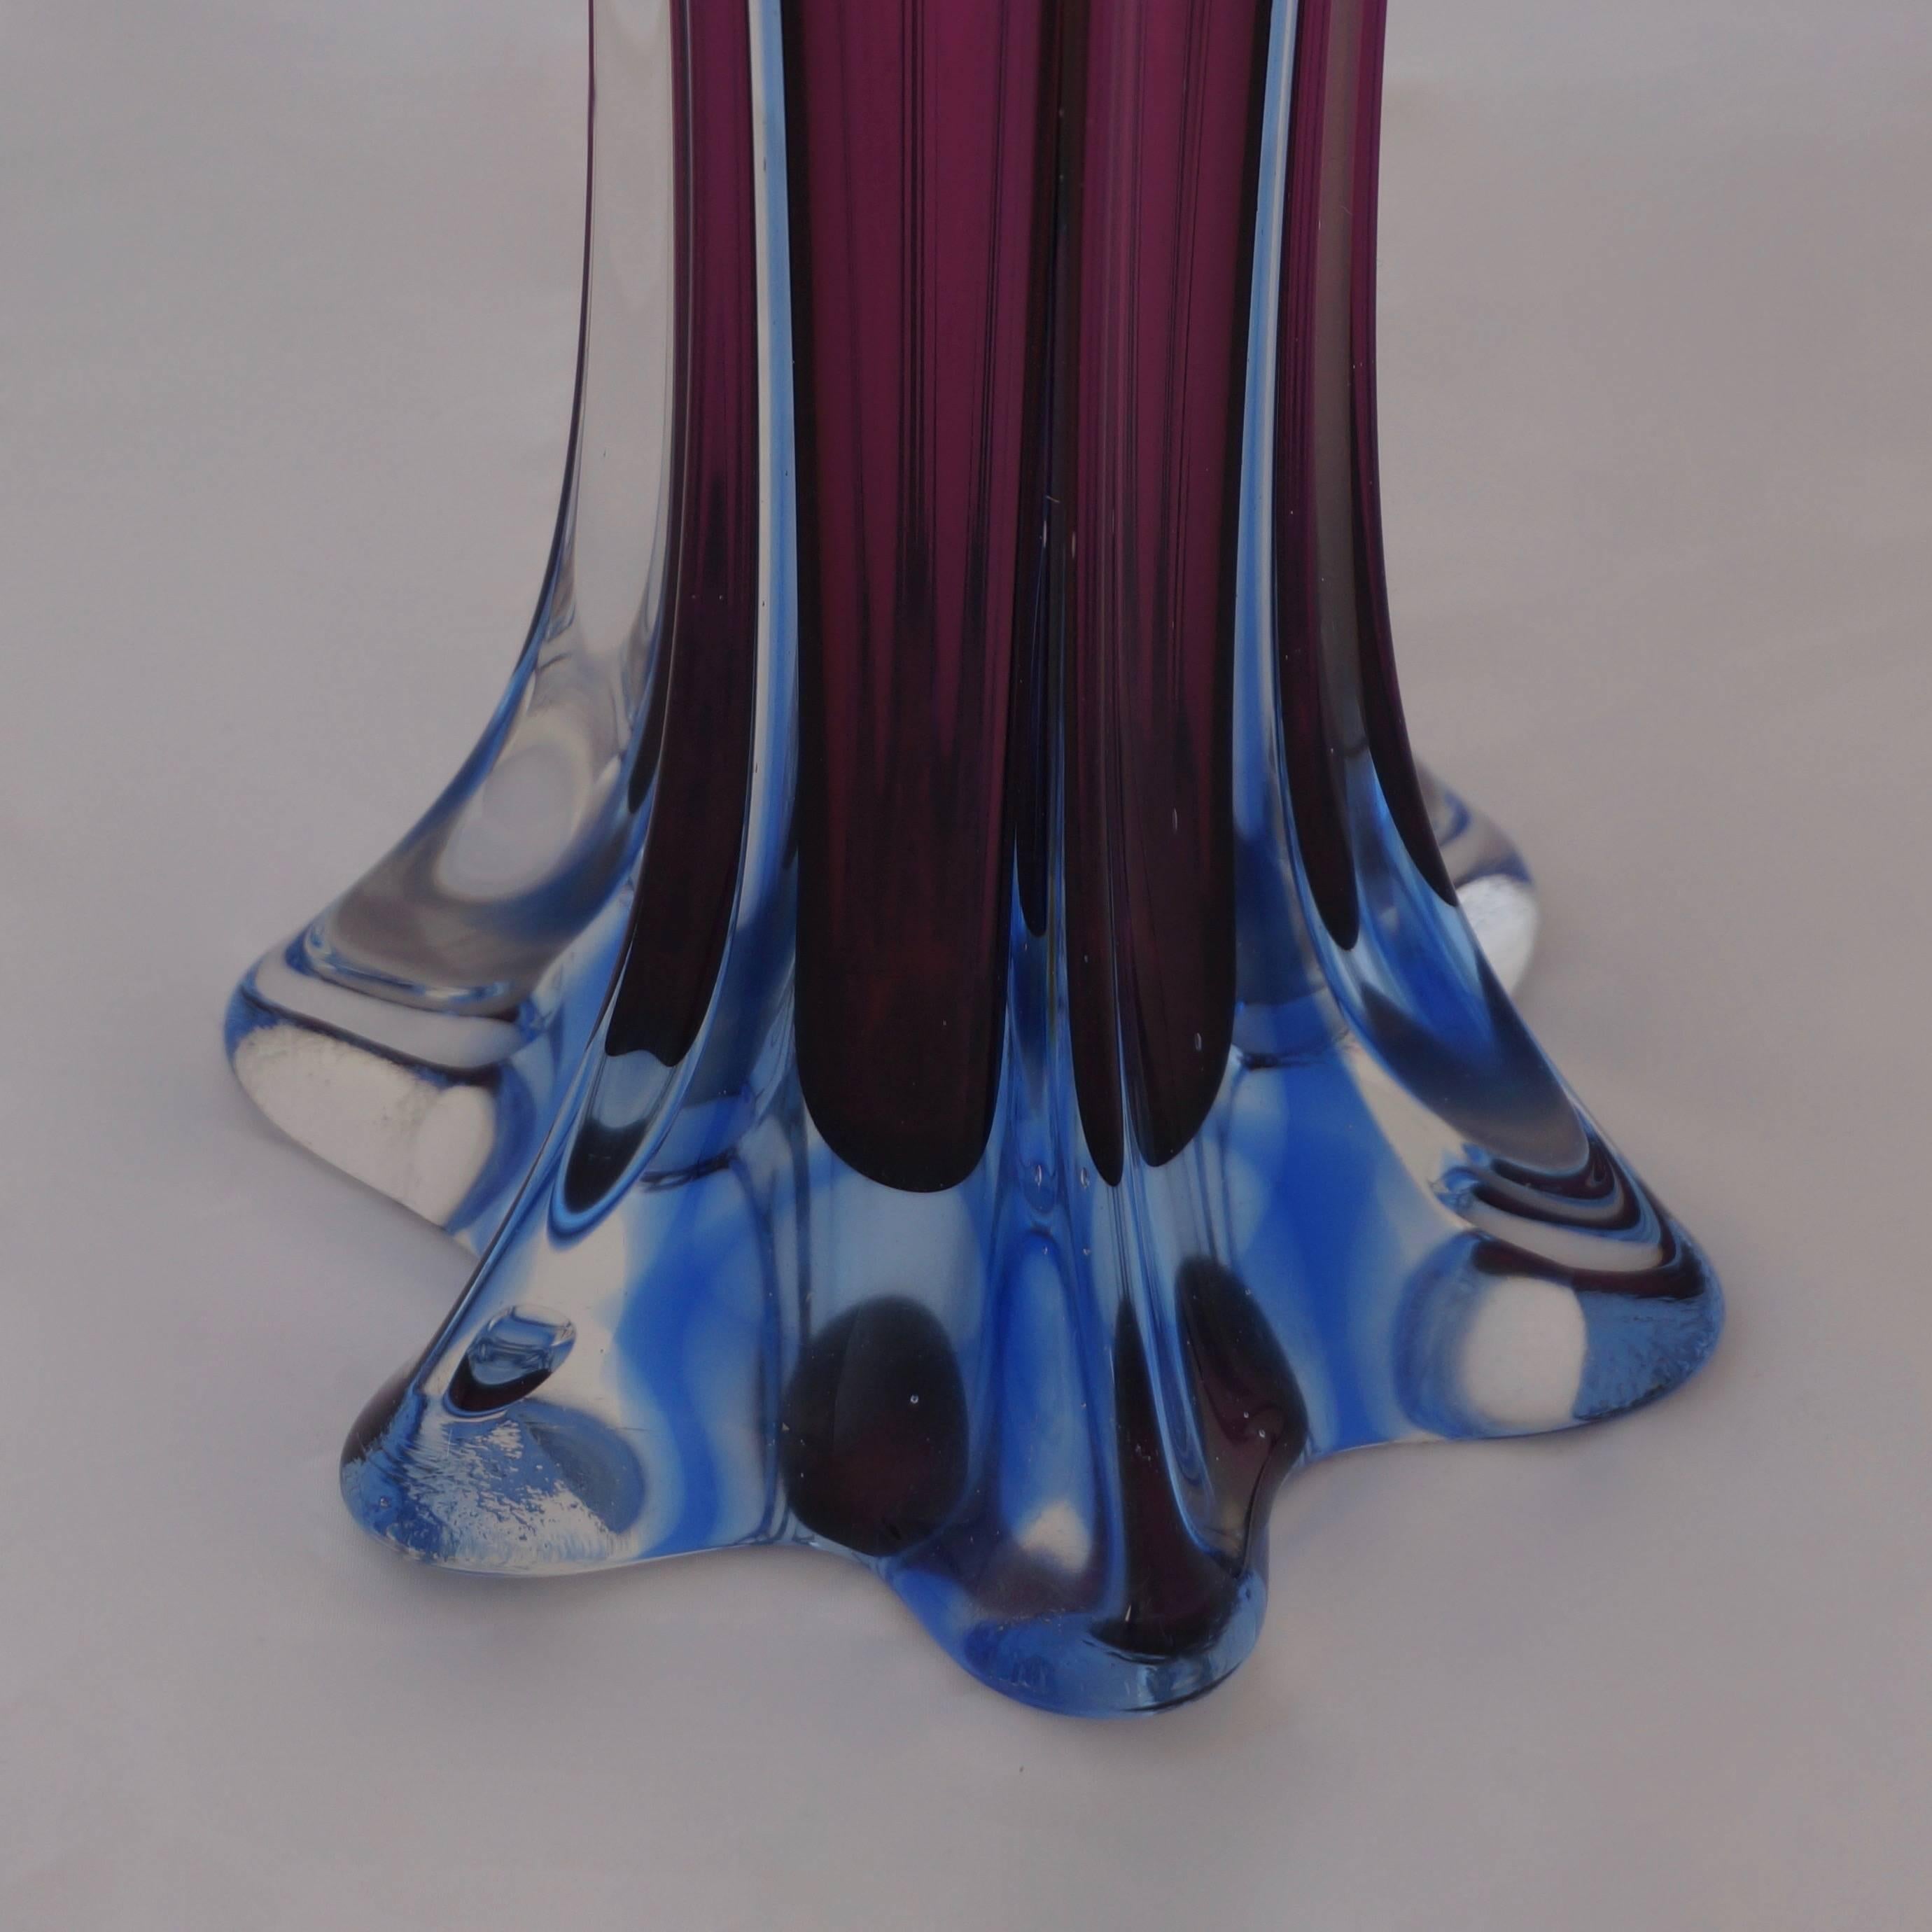 Eine Vase aus italienischem Murano-Glas, hergestellt in den 1960er Jahren.